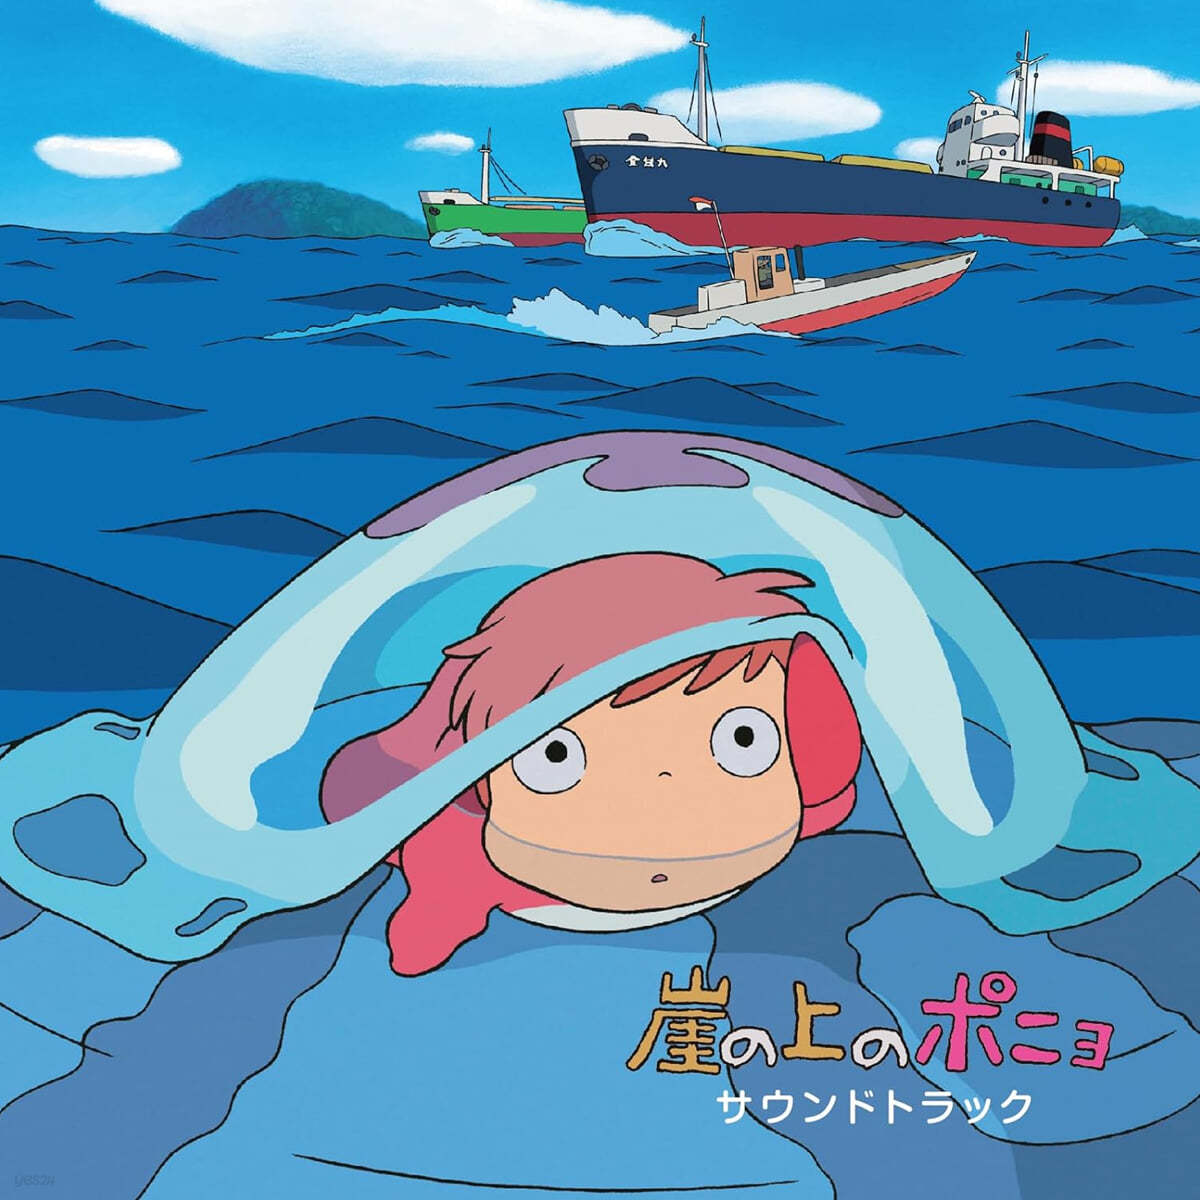 벼랑 위의 포뇨 애니메이션 음악 (Ponyo on the Cliff by the Sea OST by Hisaishi Joe)